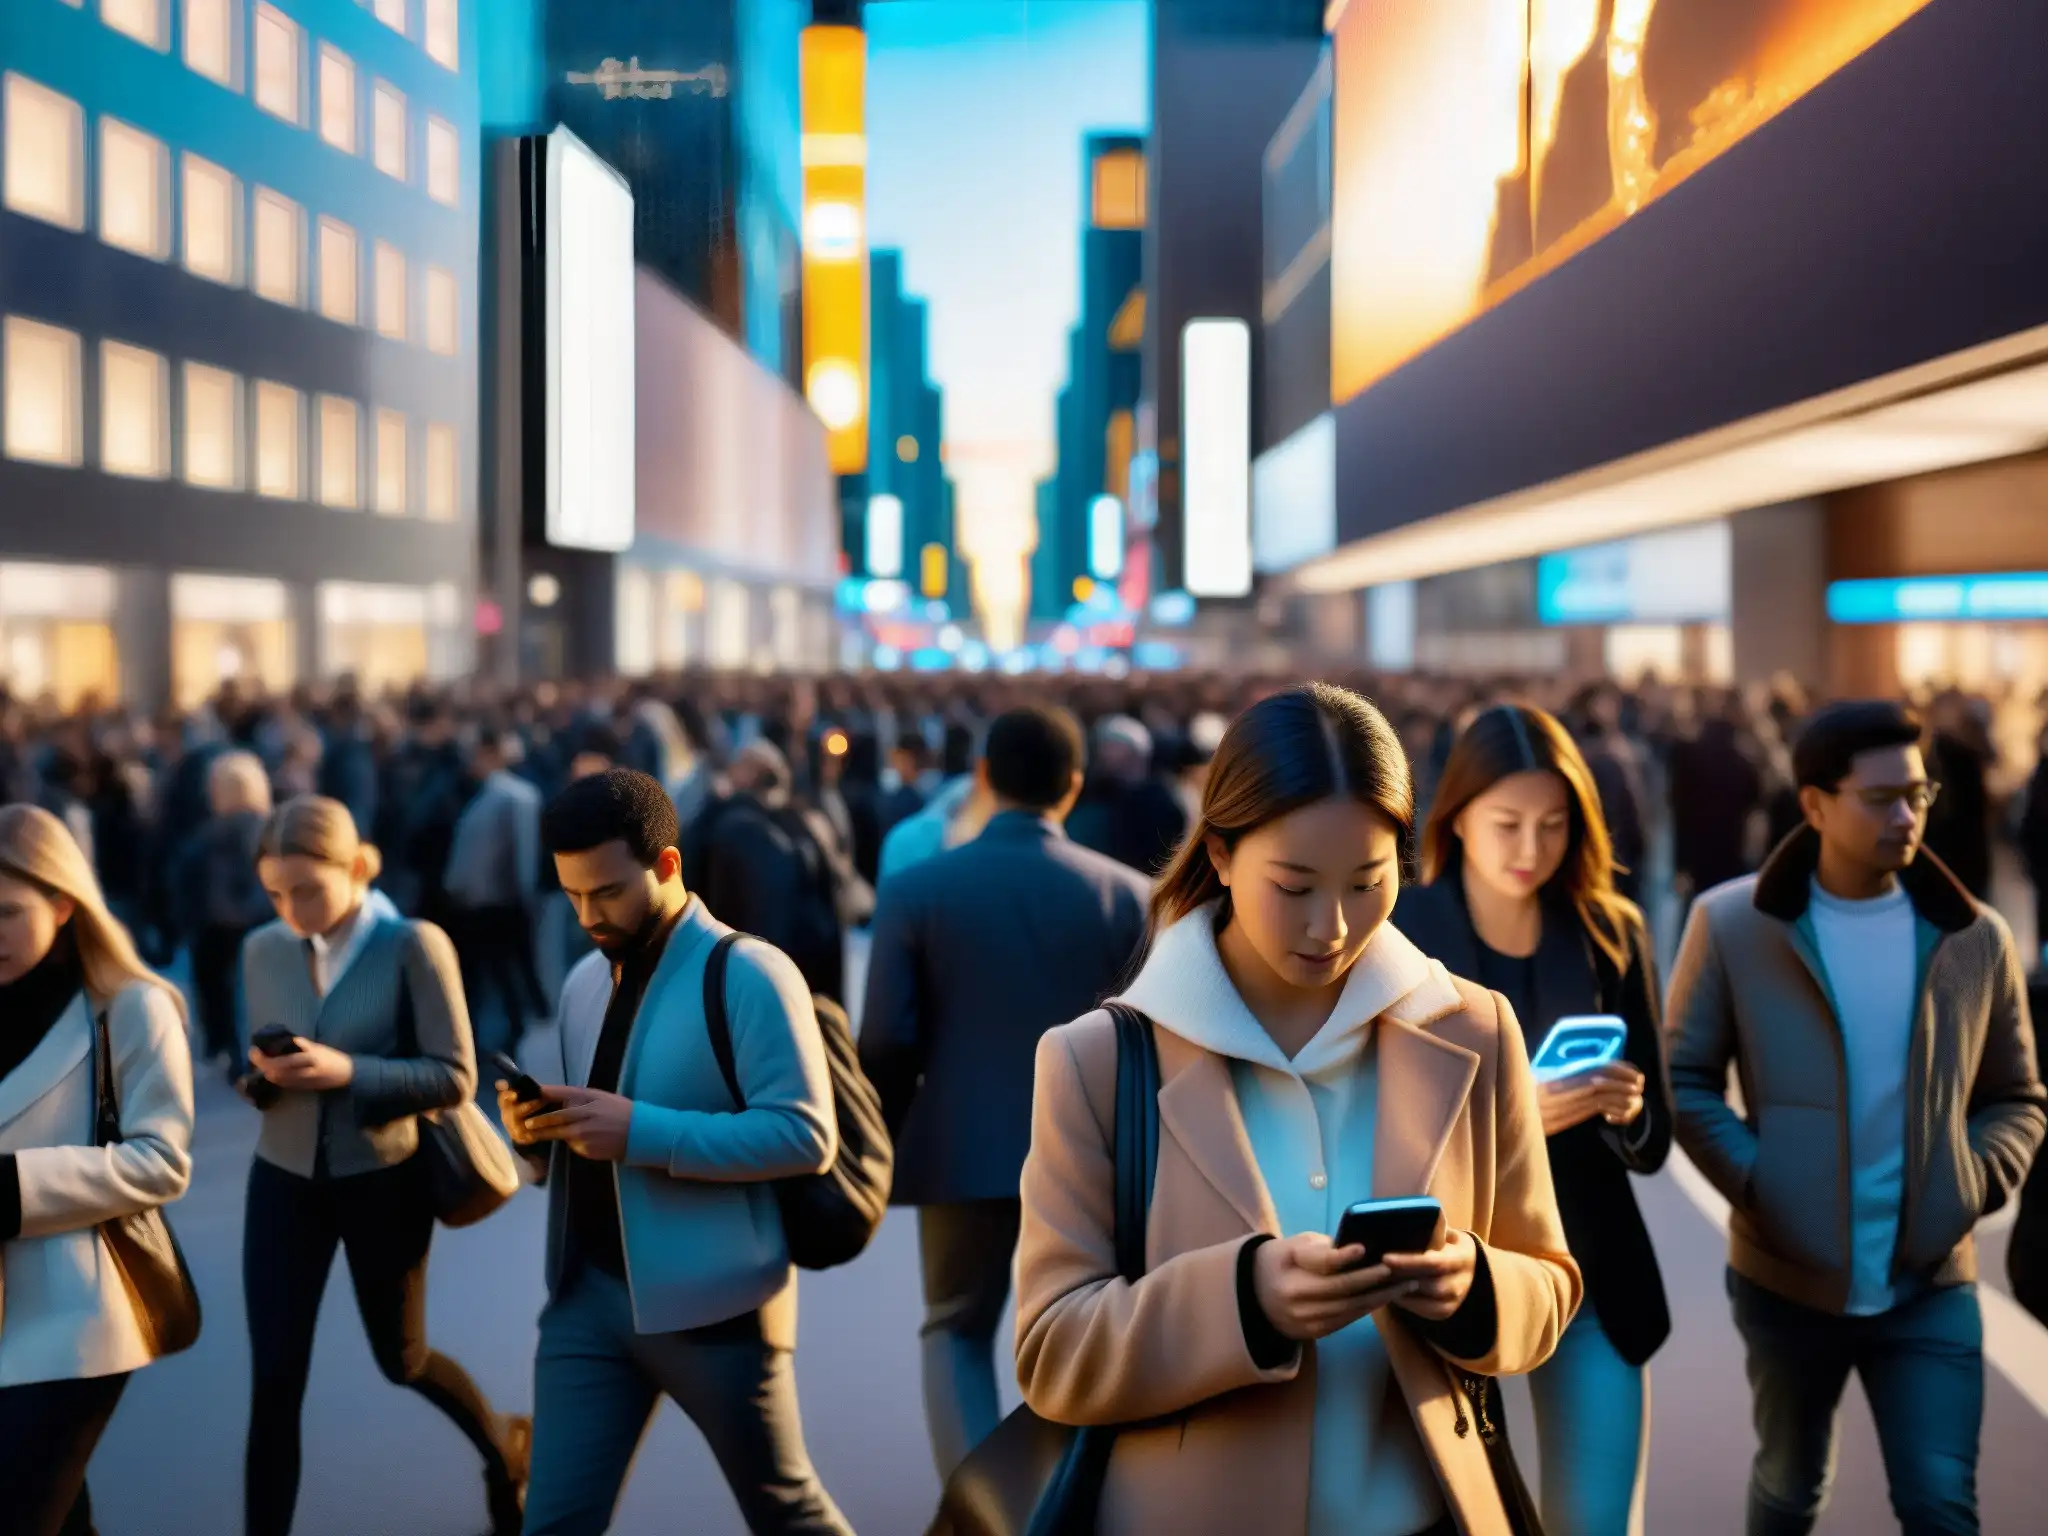 Multitud en la ciudad absorbida por sus smartphones, con impacto de la era digital en leyendas urbanas